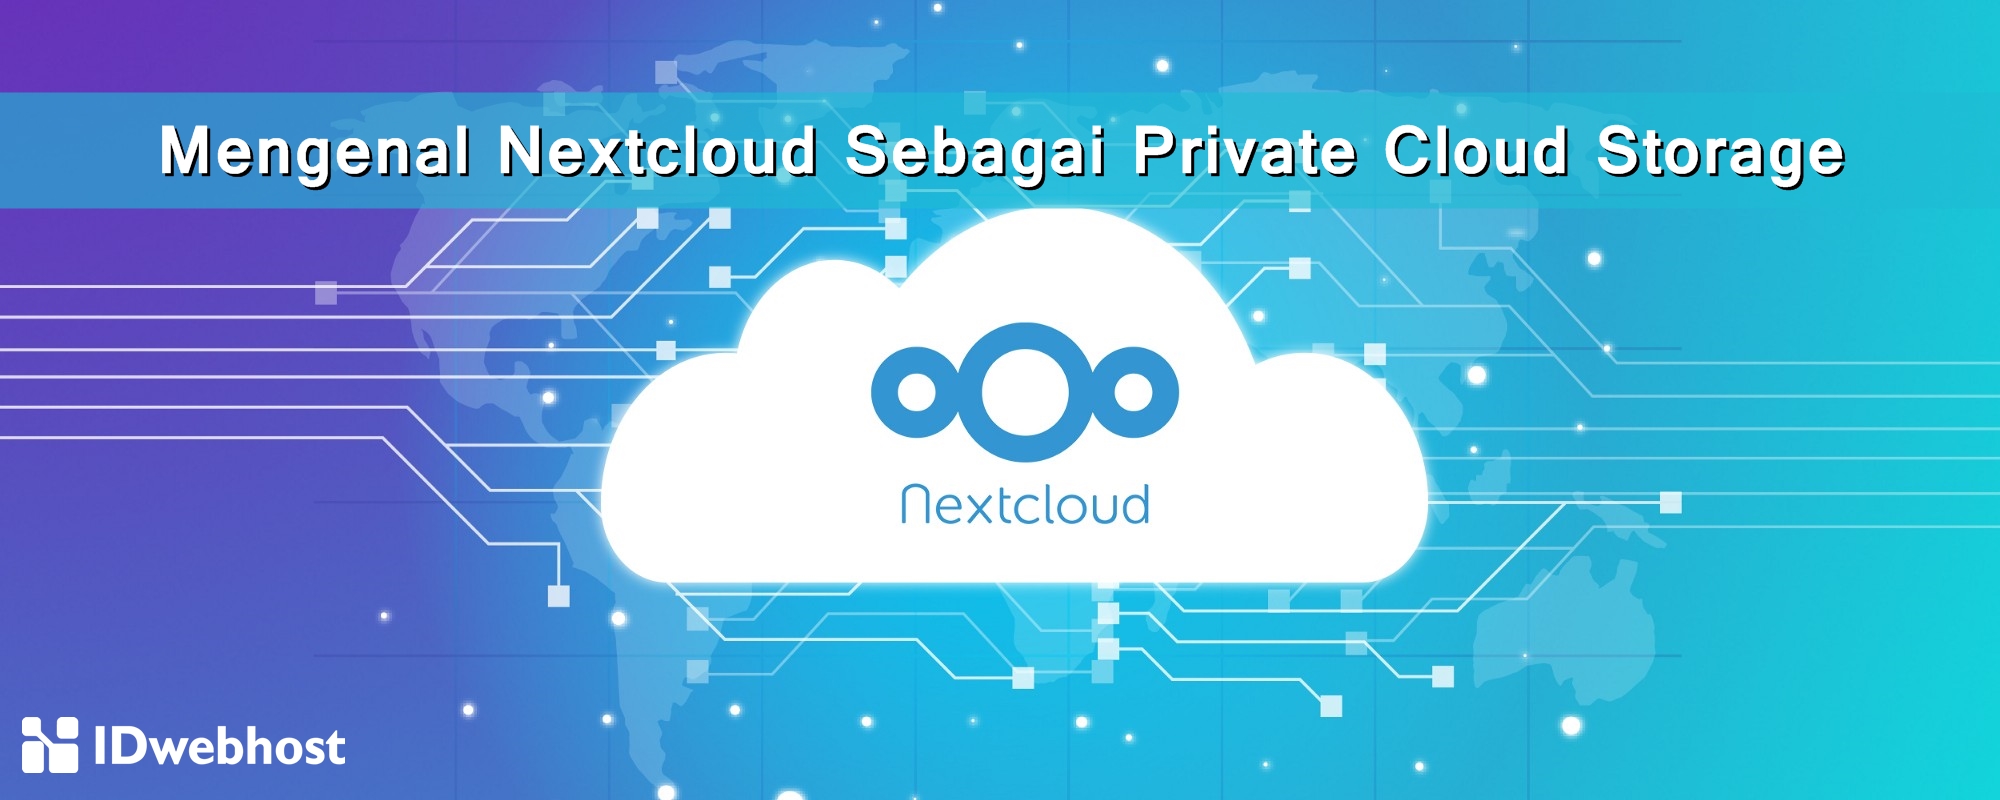 Mengenal Nextcloud Sebagai Private Cloud Storage